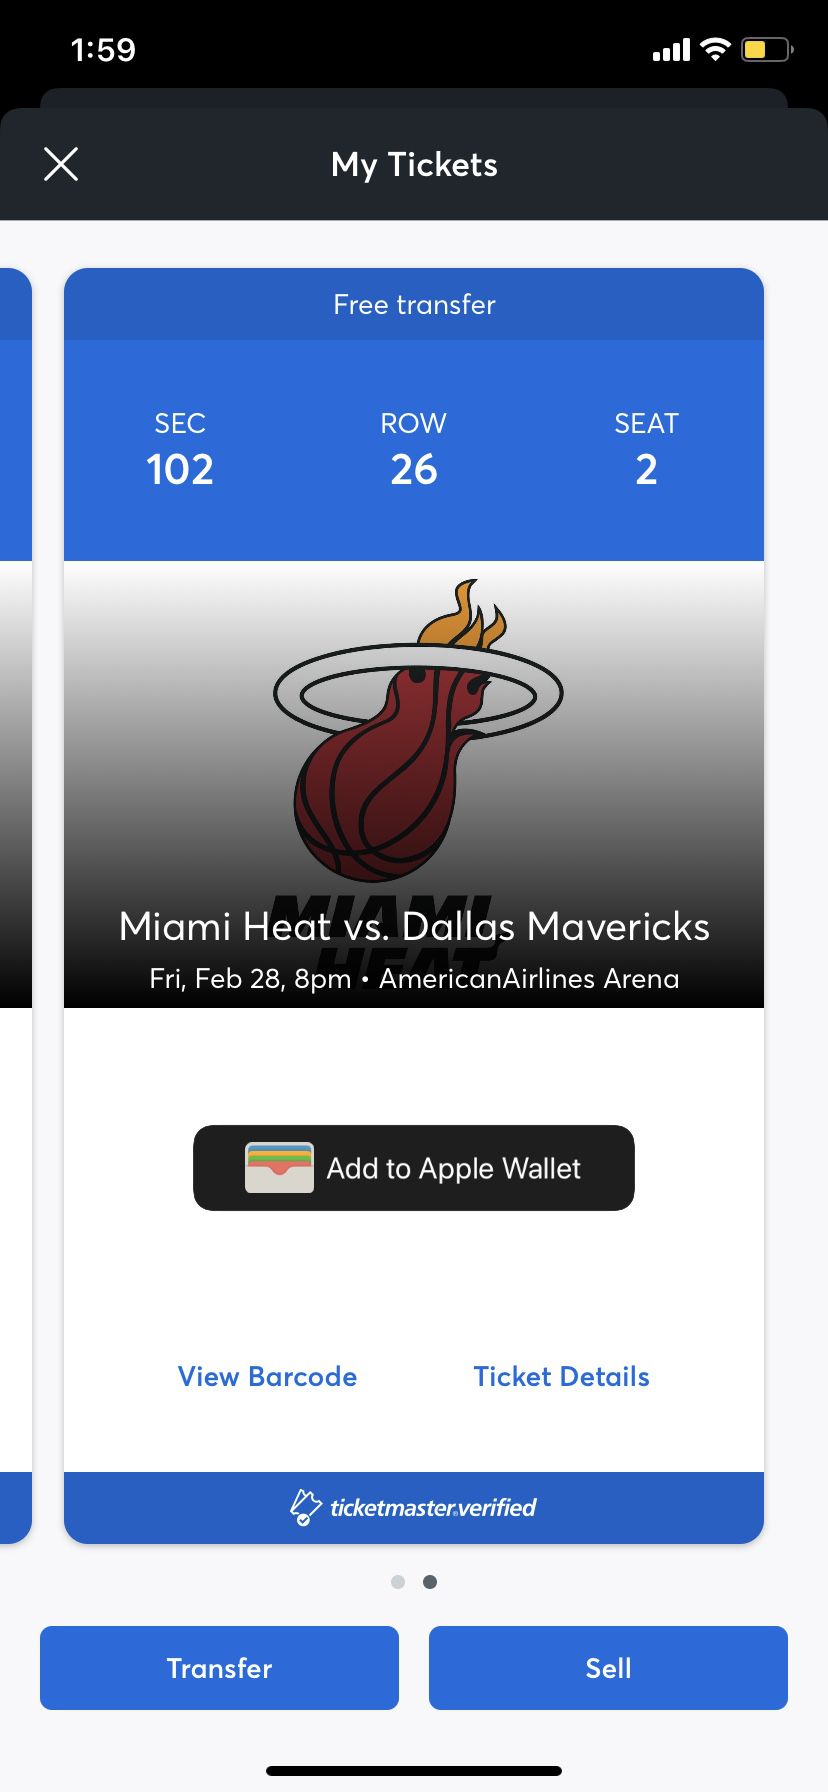 Miami Heat vs Dallas Mavericks - section 102 Row 26 - 2 tickets